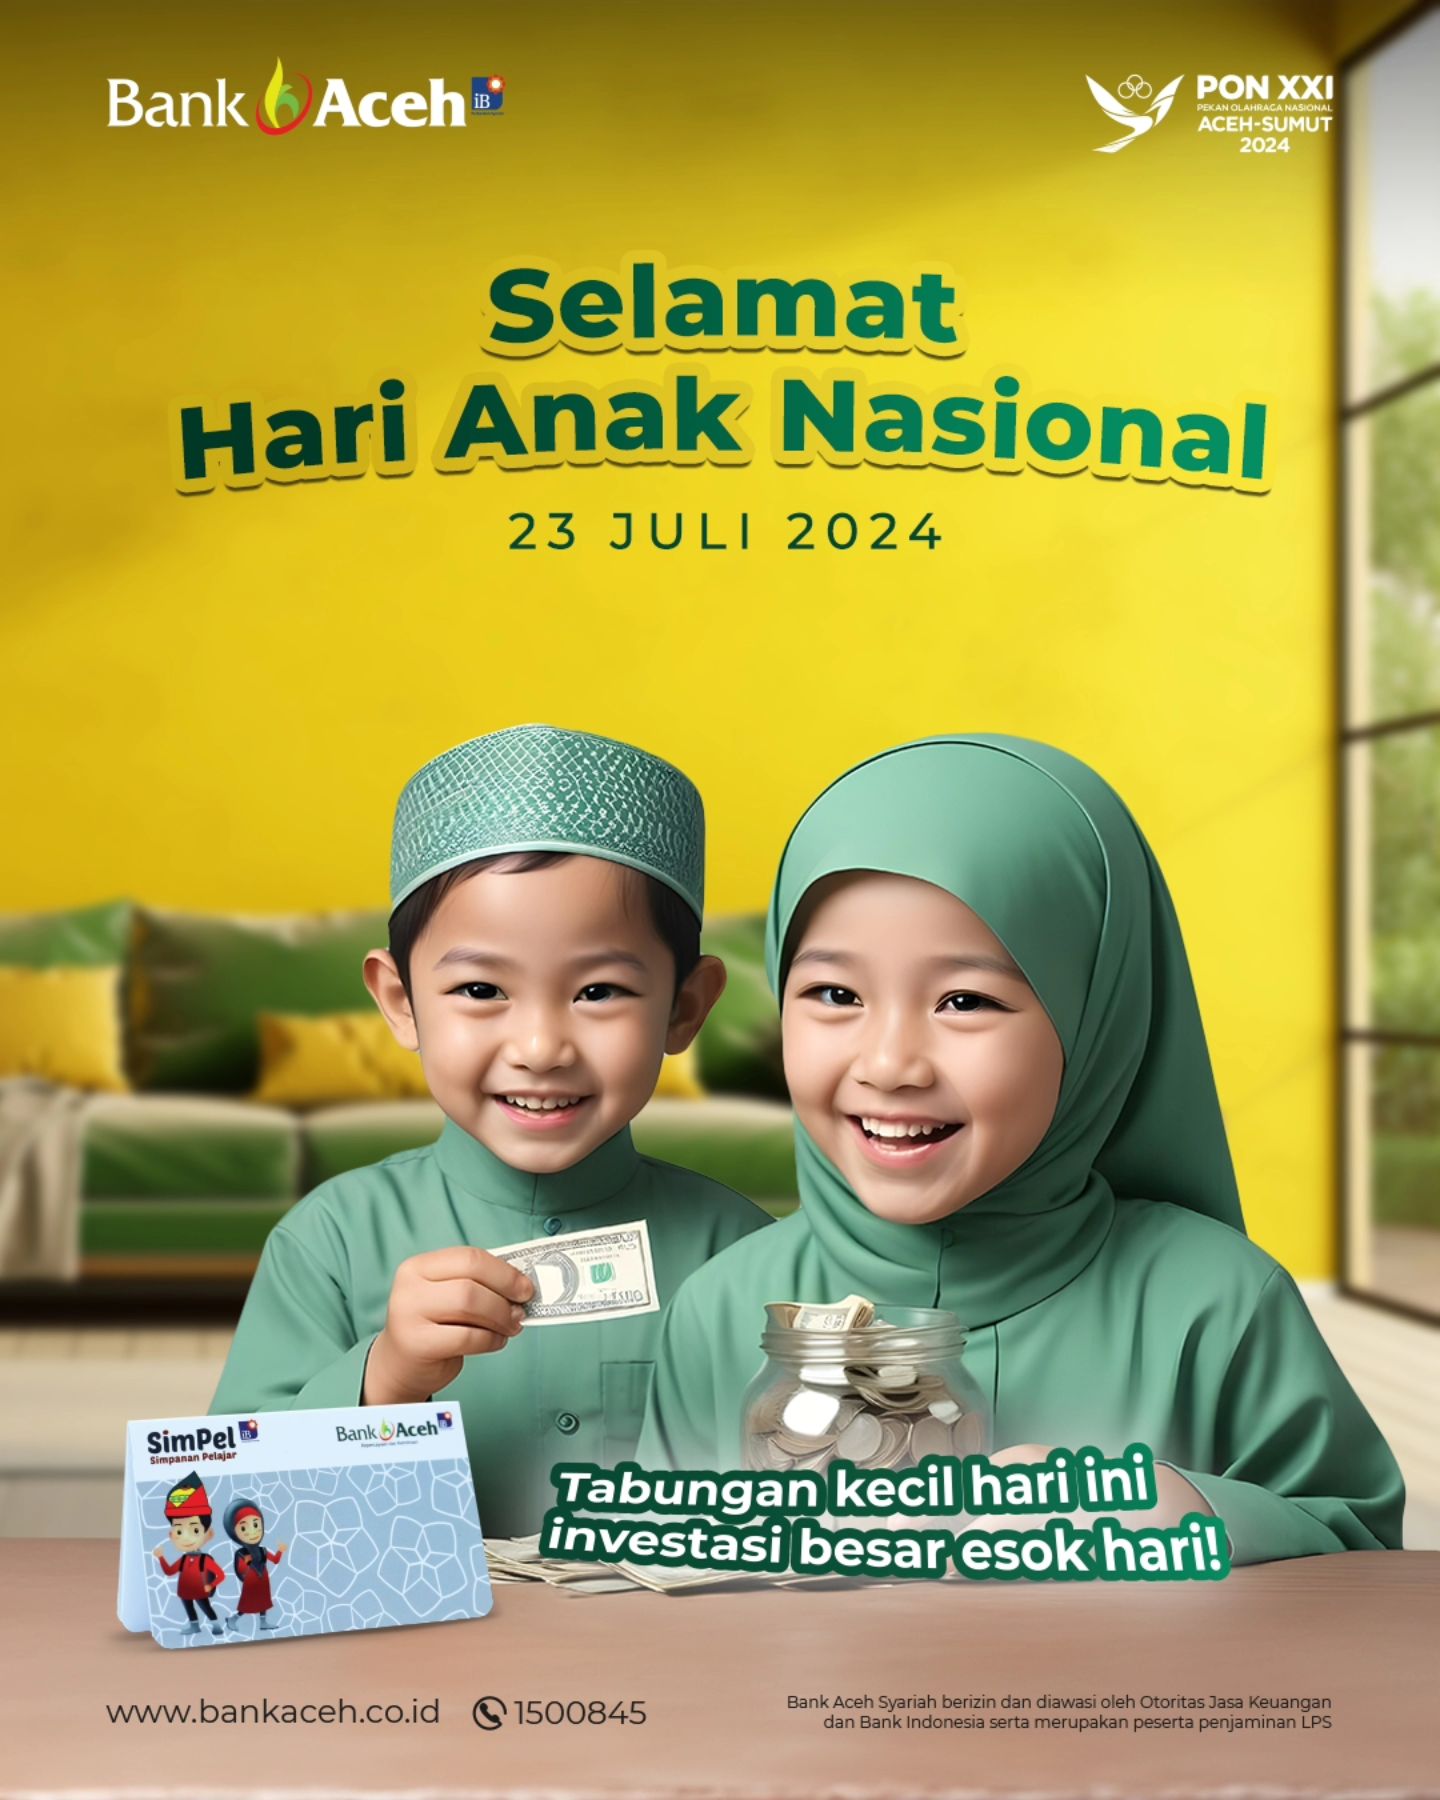 Selamat Hari Anak Nasional 23 Juli 2024 dari Bank Aceh Syariah